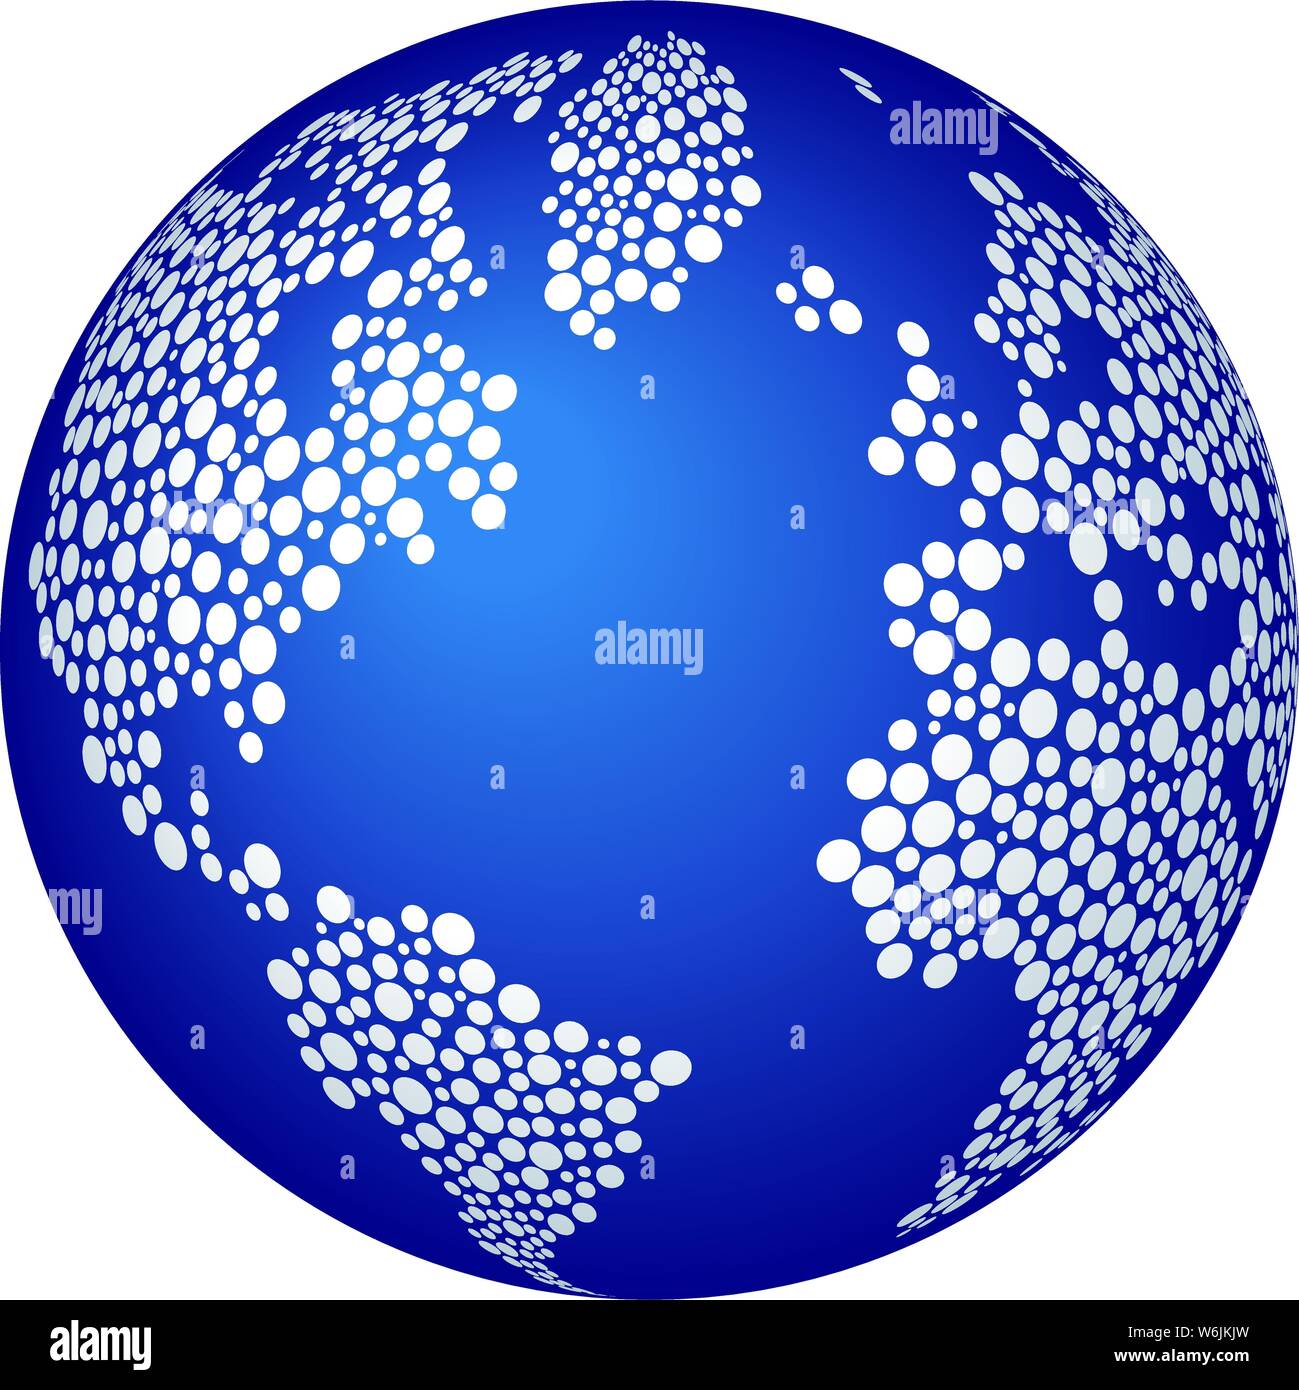 Illustrazione Vettoriale. Punteggiato ristretto mondo immagine mappa in toni di blu. Illustrazione Vettoriale